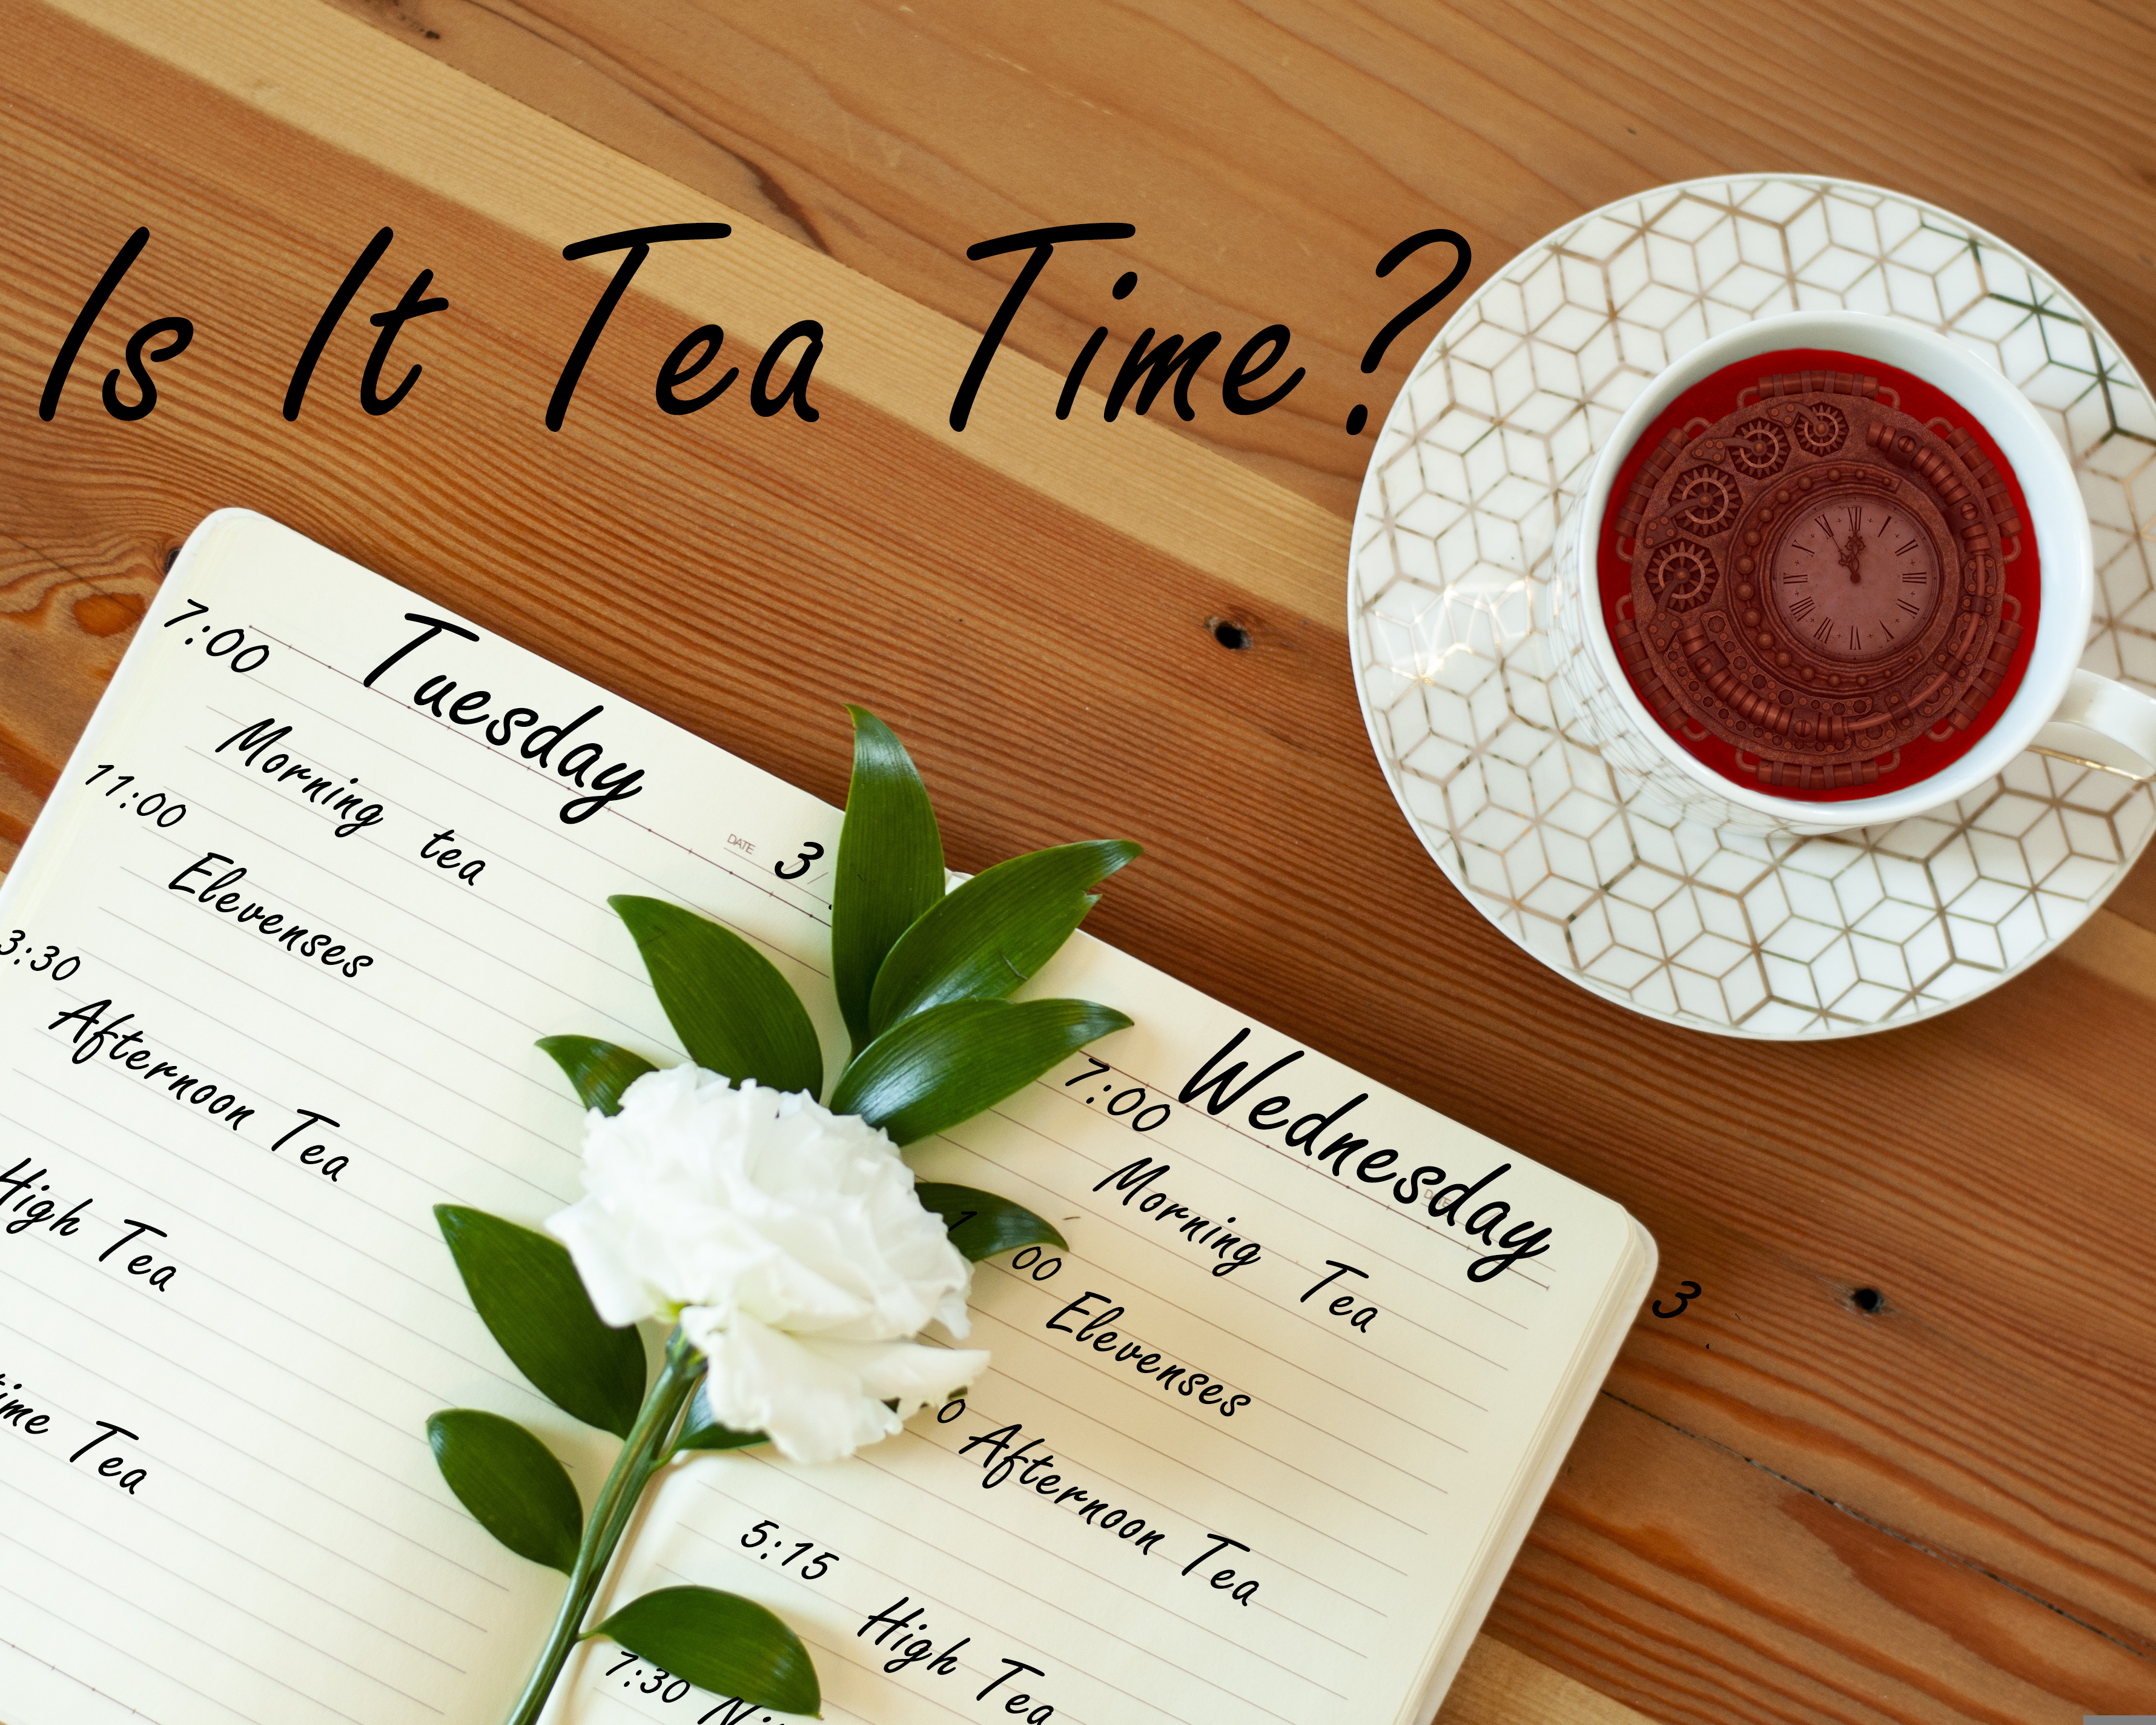 Is It Tea Time?